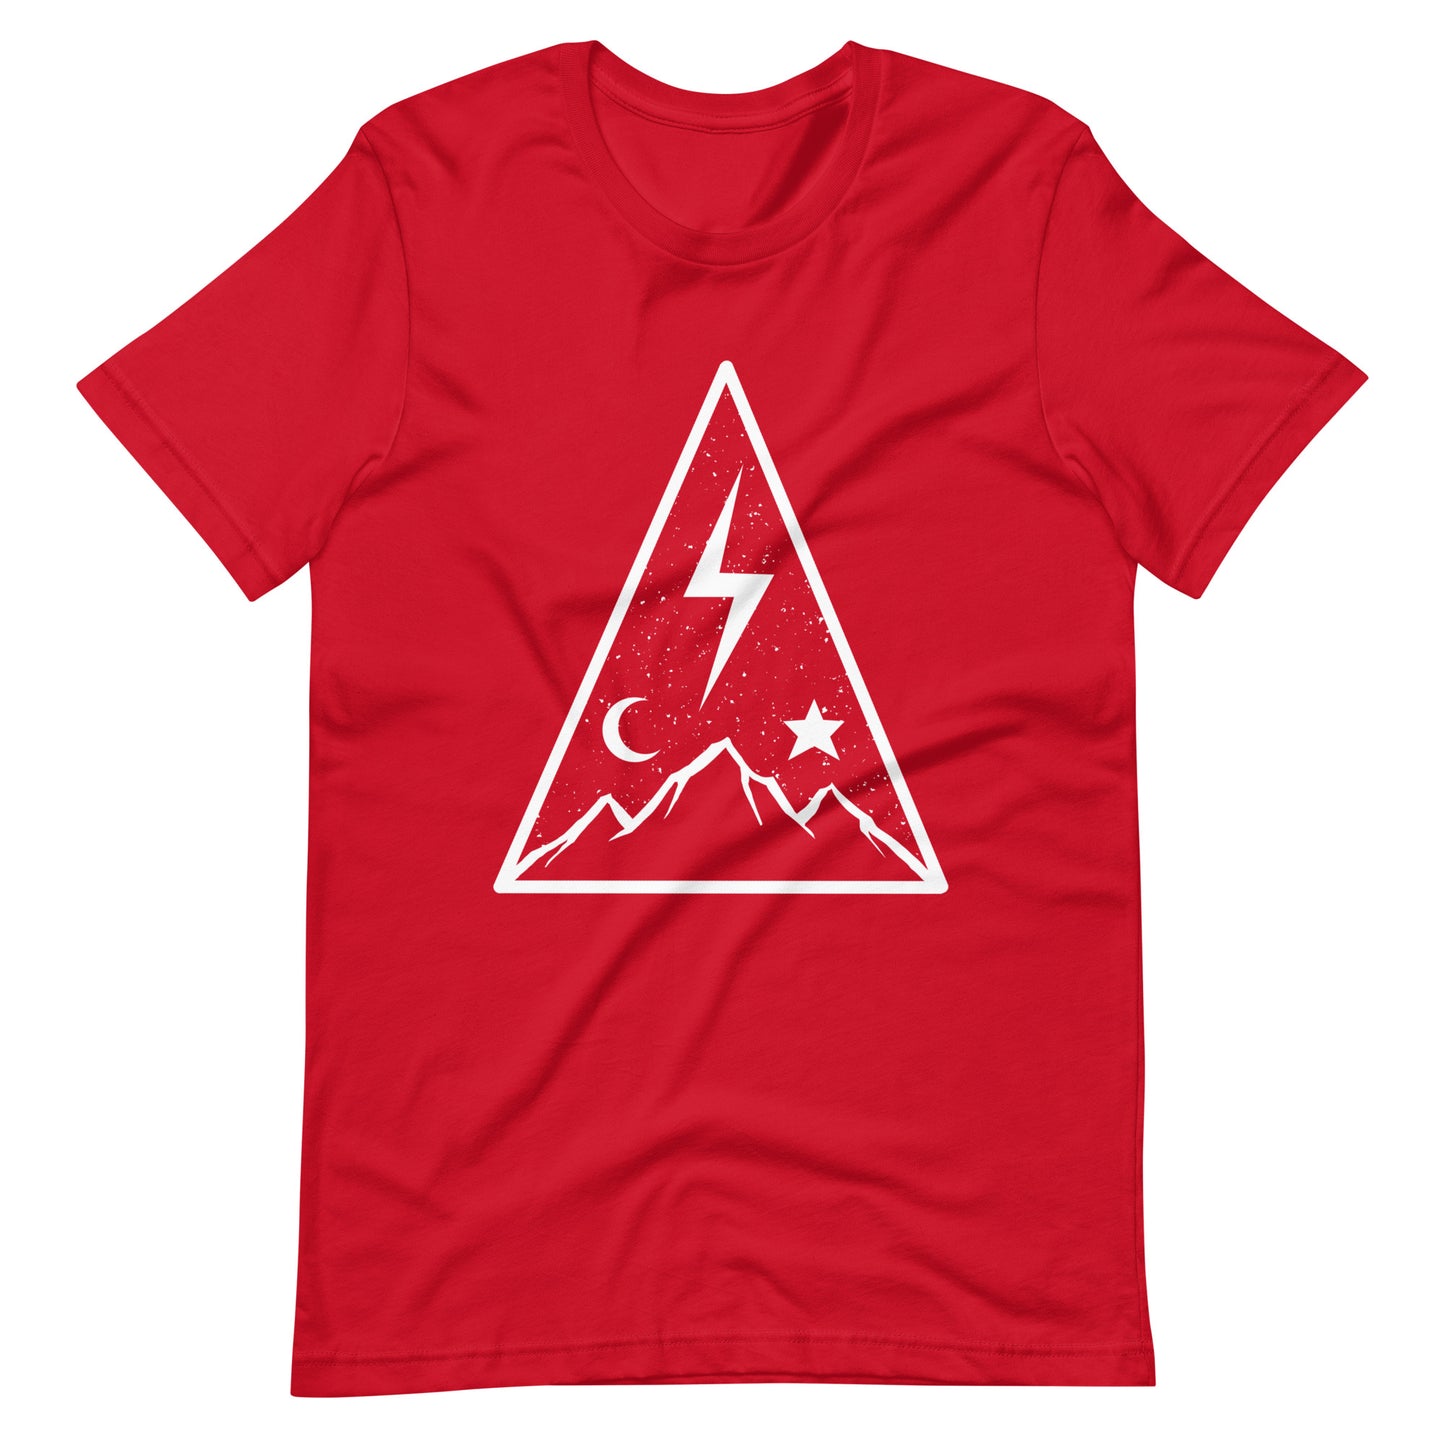 Coalesce - Men's t-shirt - Red Front